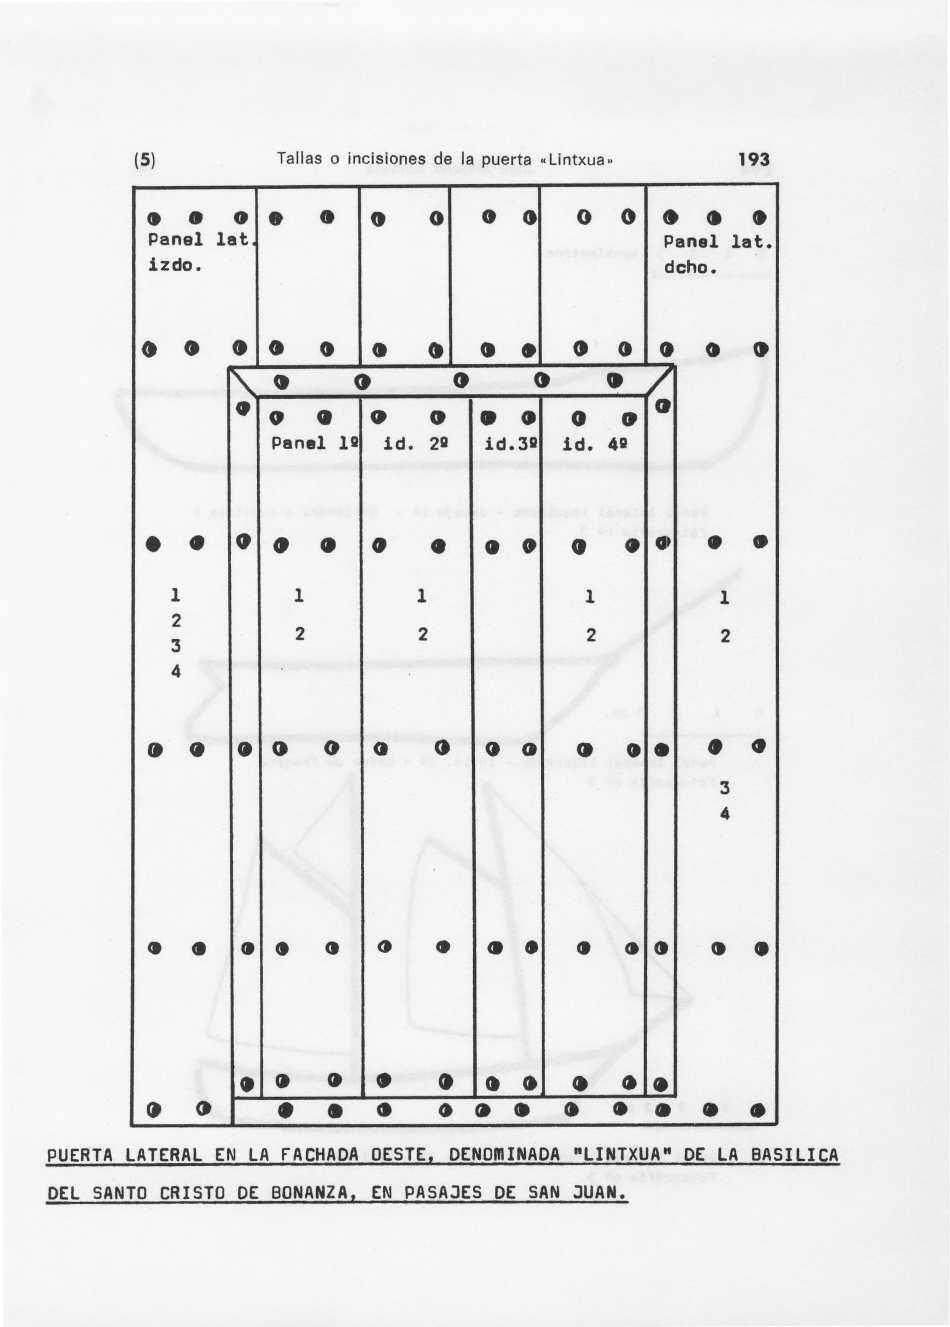 (5) Tallas o incisiones de la puerta «Lintxua», 193 0 0 Panel 1 at, izdo. o 0 0 P anel lat. d cho. o o o 0 Panel IQ 0 id. 2Q 0 0 0 id.3q 0 0 id.